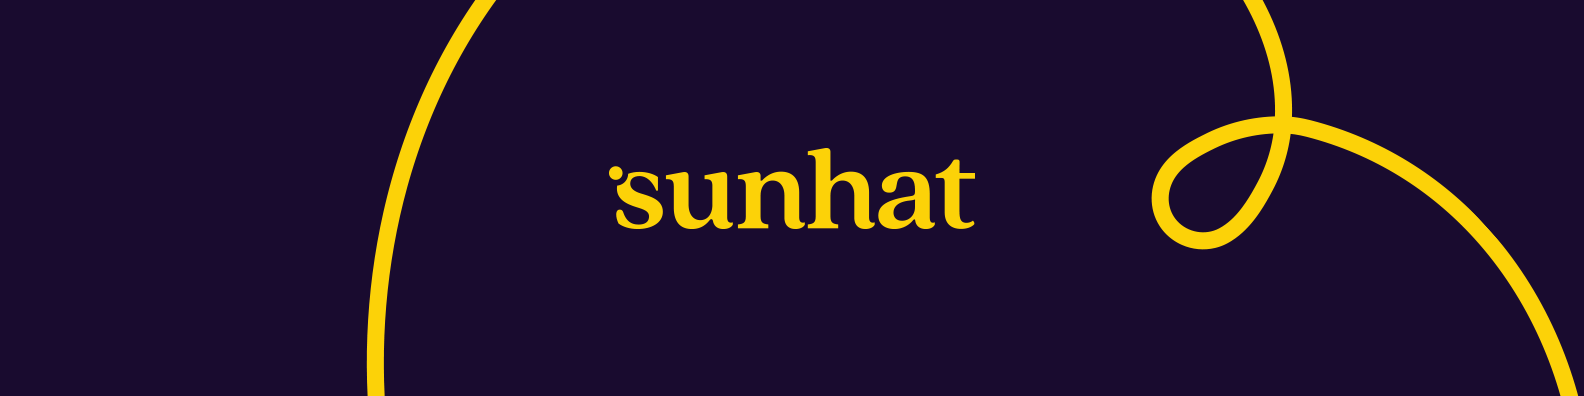 Sunhat / startup von Köln / Background